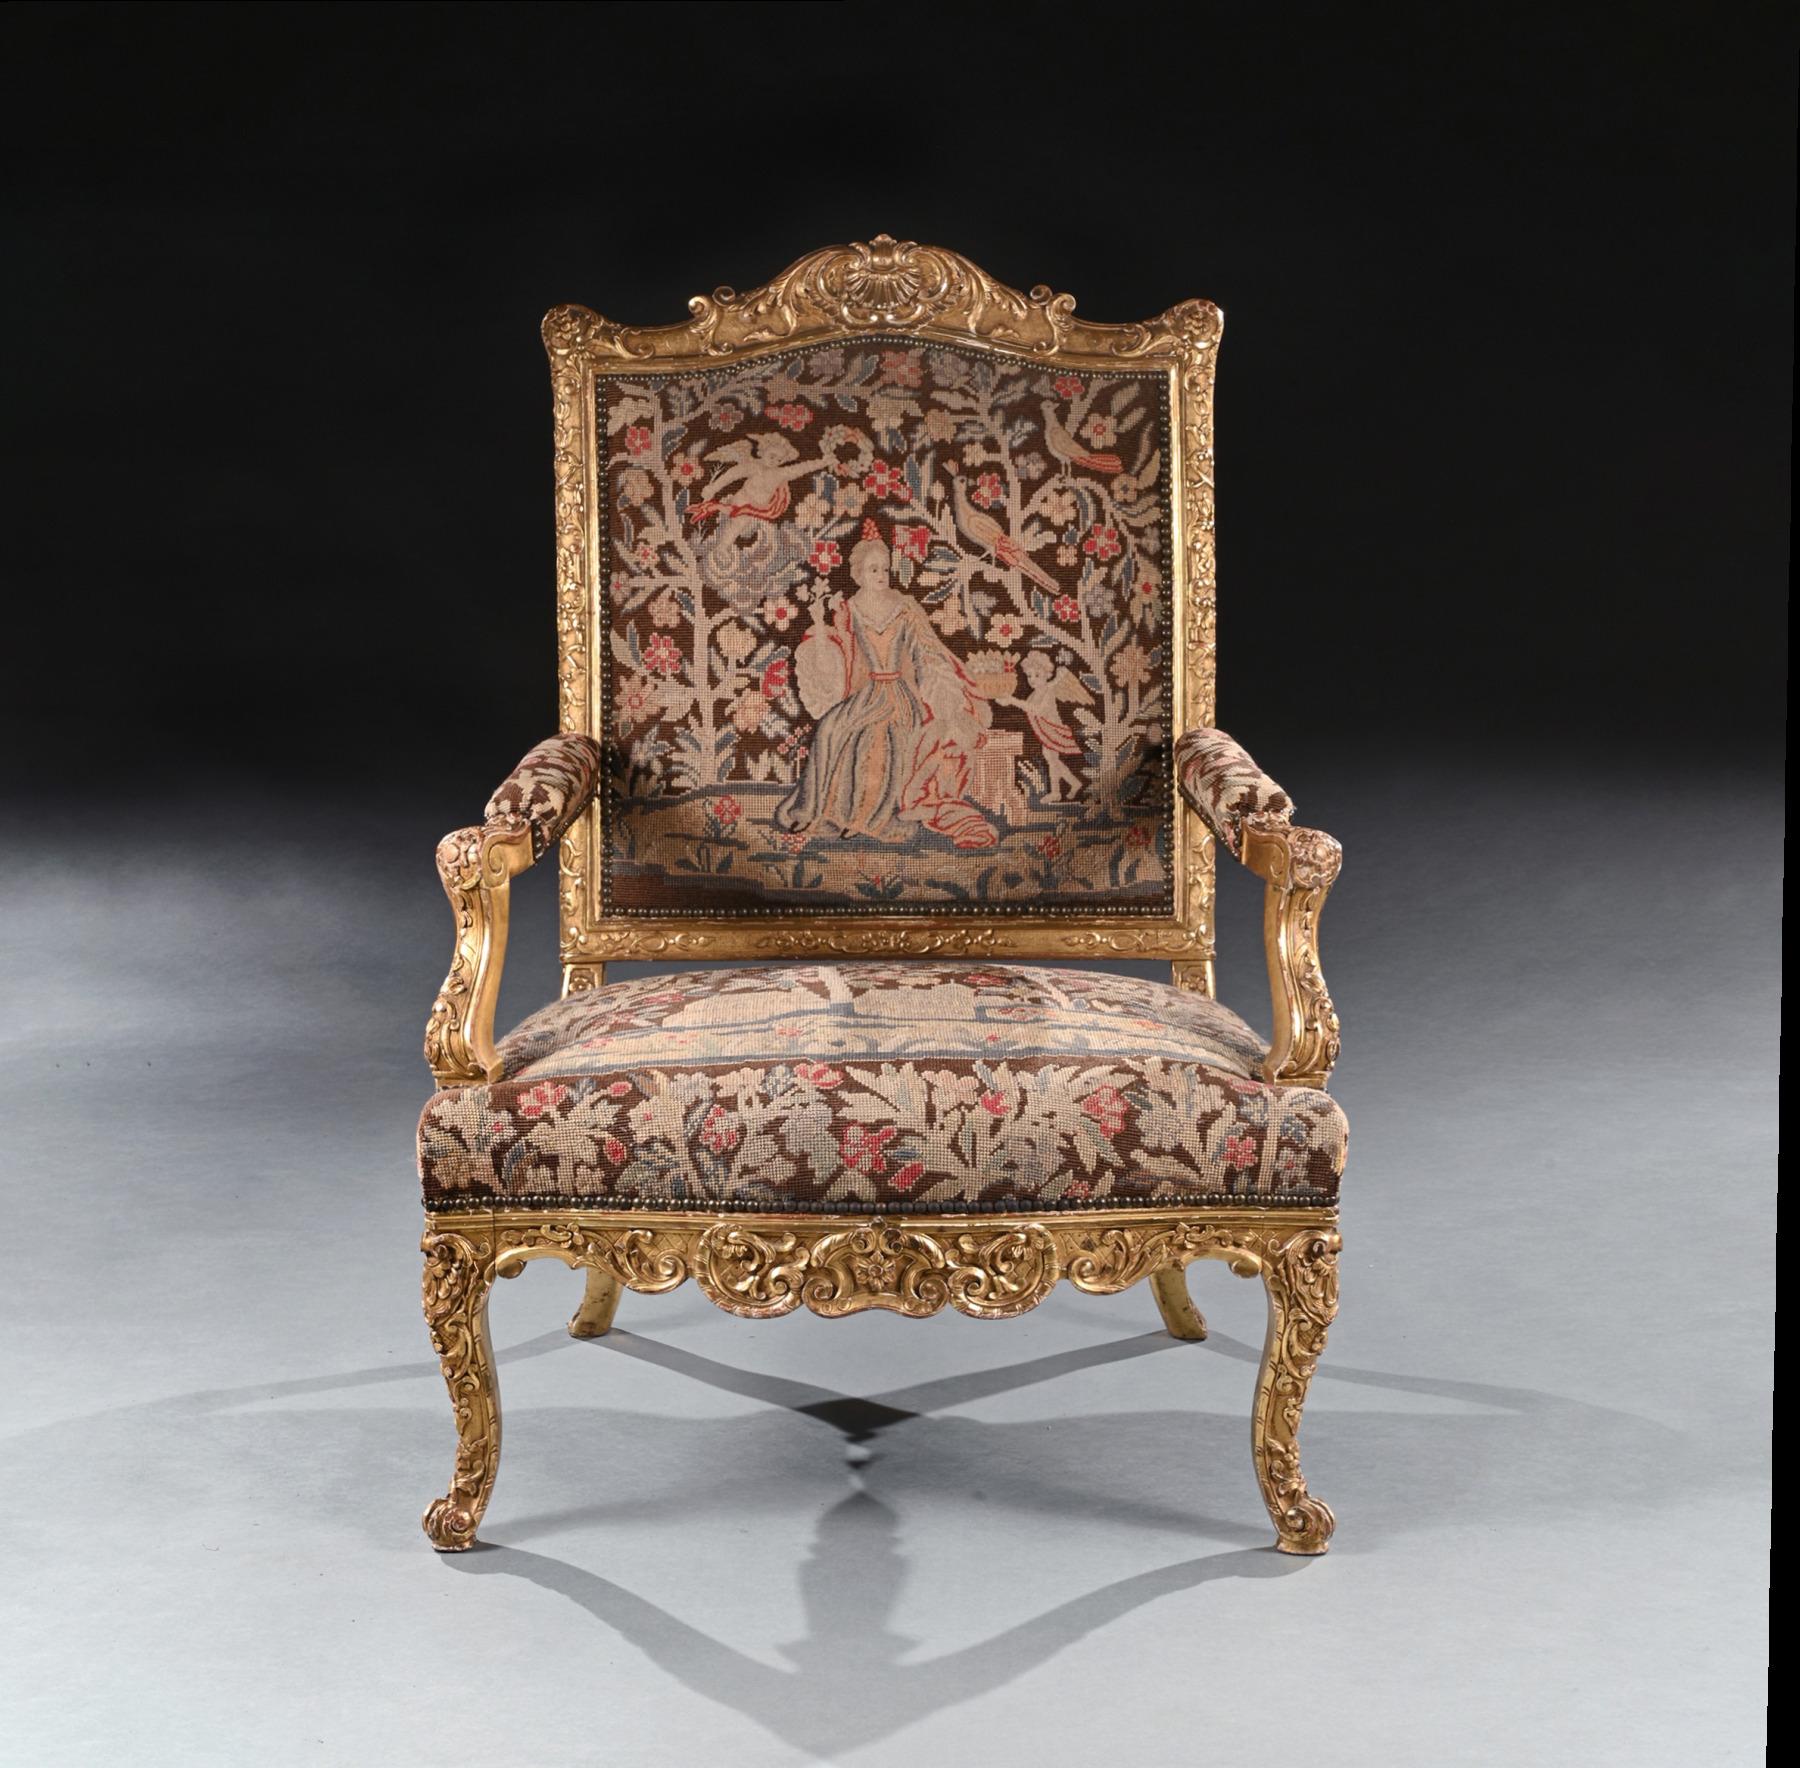 Eine sehr beeindruckende seltene Französisch geschnitzt Régence Zeitraum vergoldet fauteuil / Sessel von imposanten Proportionen mit Handarbeit Polsterung.

Französisch - um 1715

Dieser wundervoll gezeichnete Sessel von großem Ausmaß hat eine